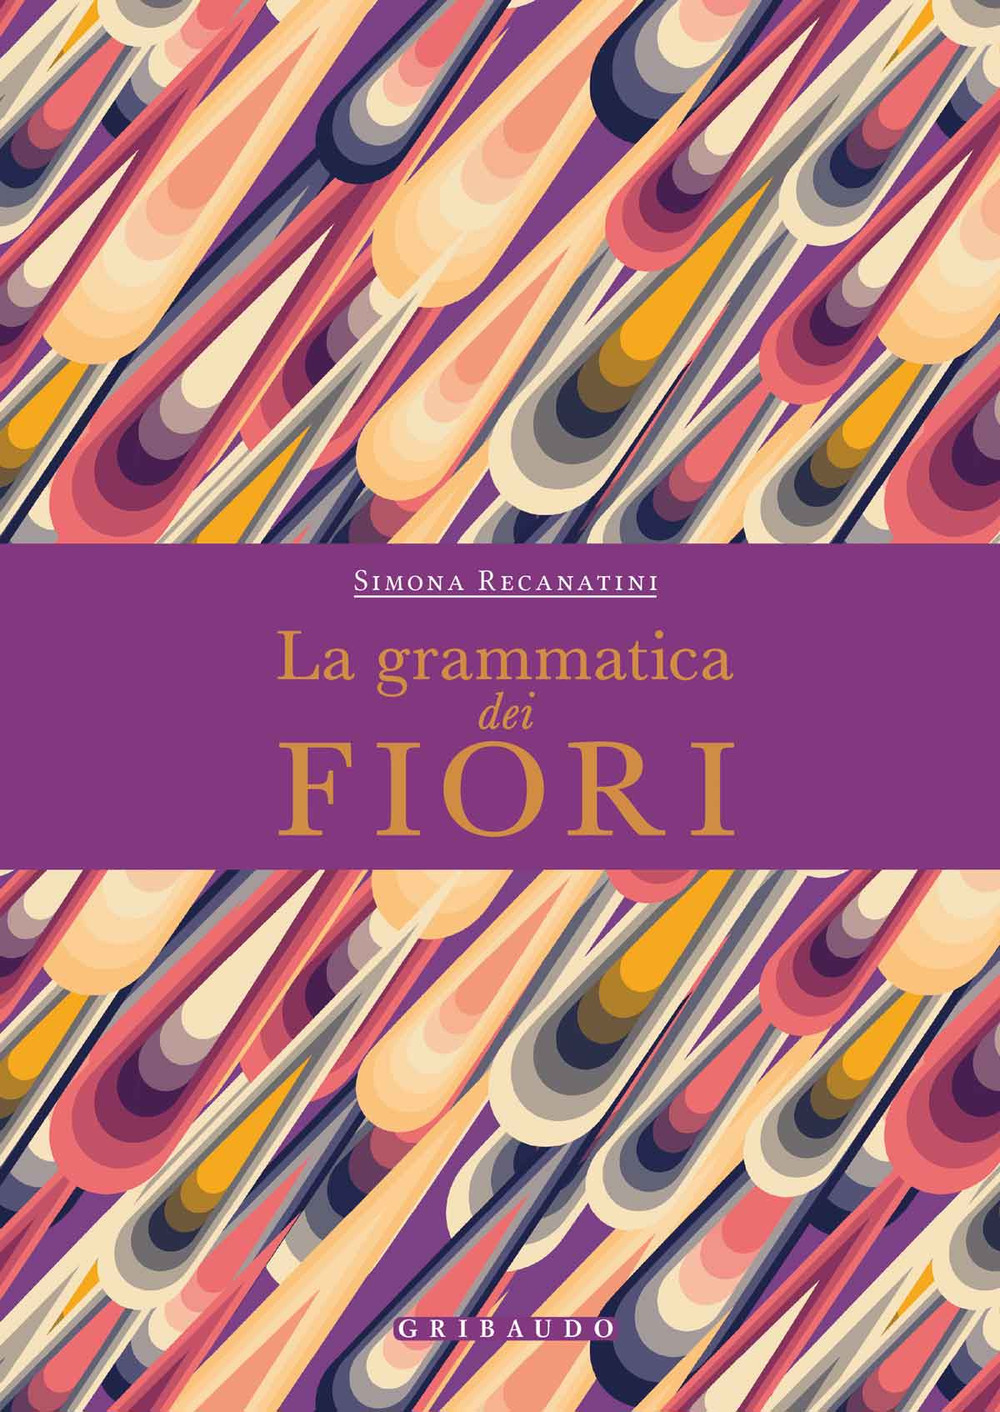 Libri Simona Recanatini - La Grammatica Dei Fiori NUOVO SIGILLATO, EDIZIONE DEL 03/12/2020 SUBITO DISPONIBILE